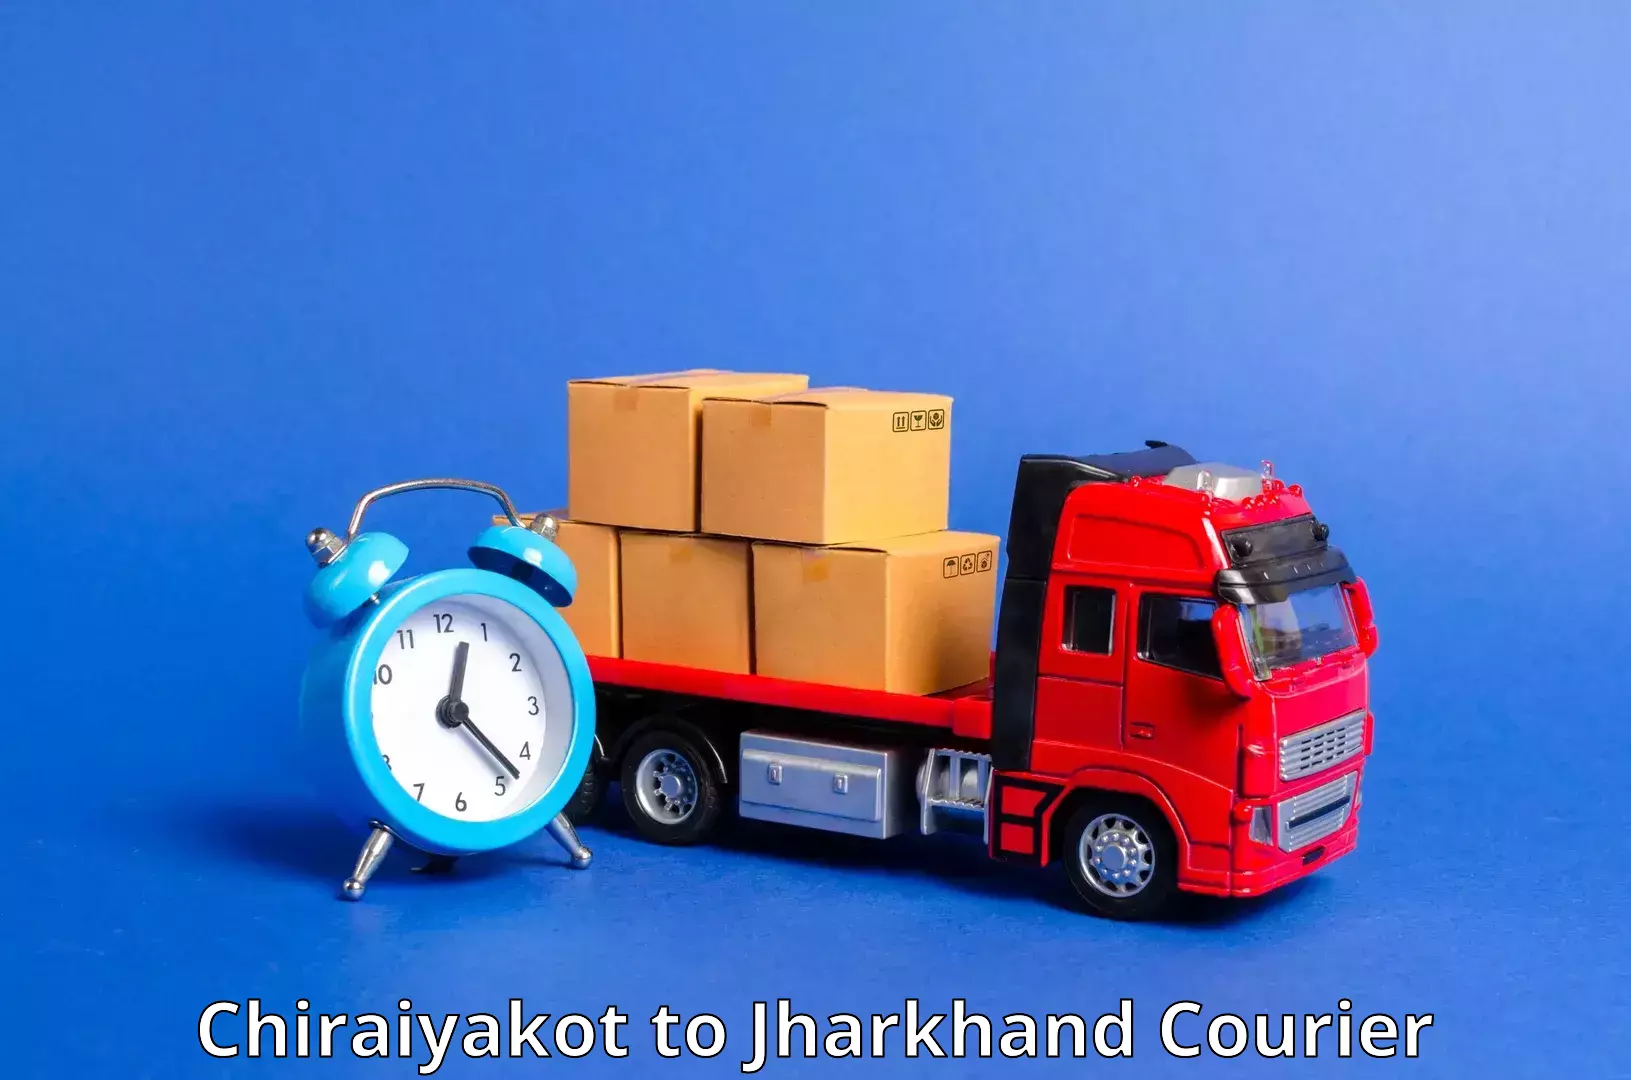 24/7 shipping services Chiraiyakot to Hazaribagh